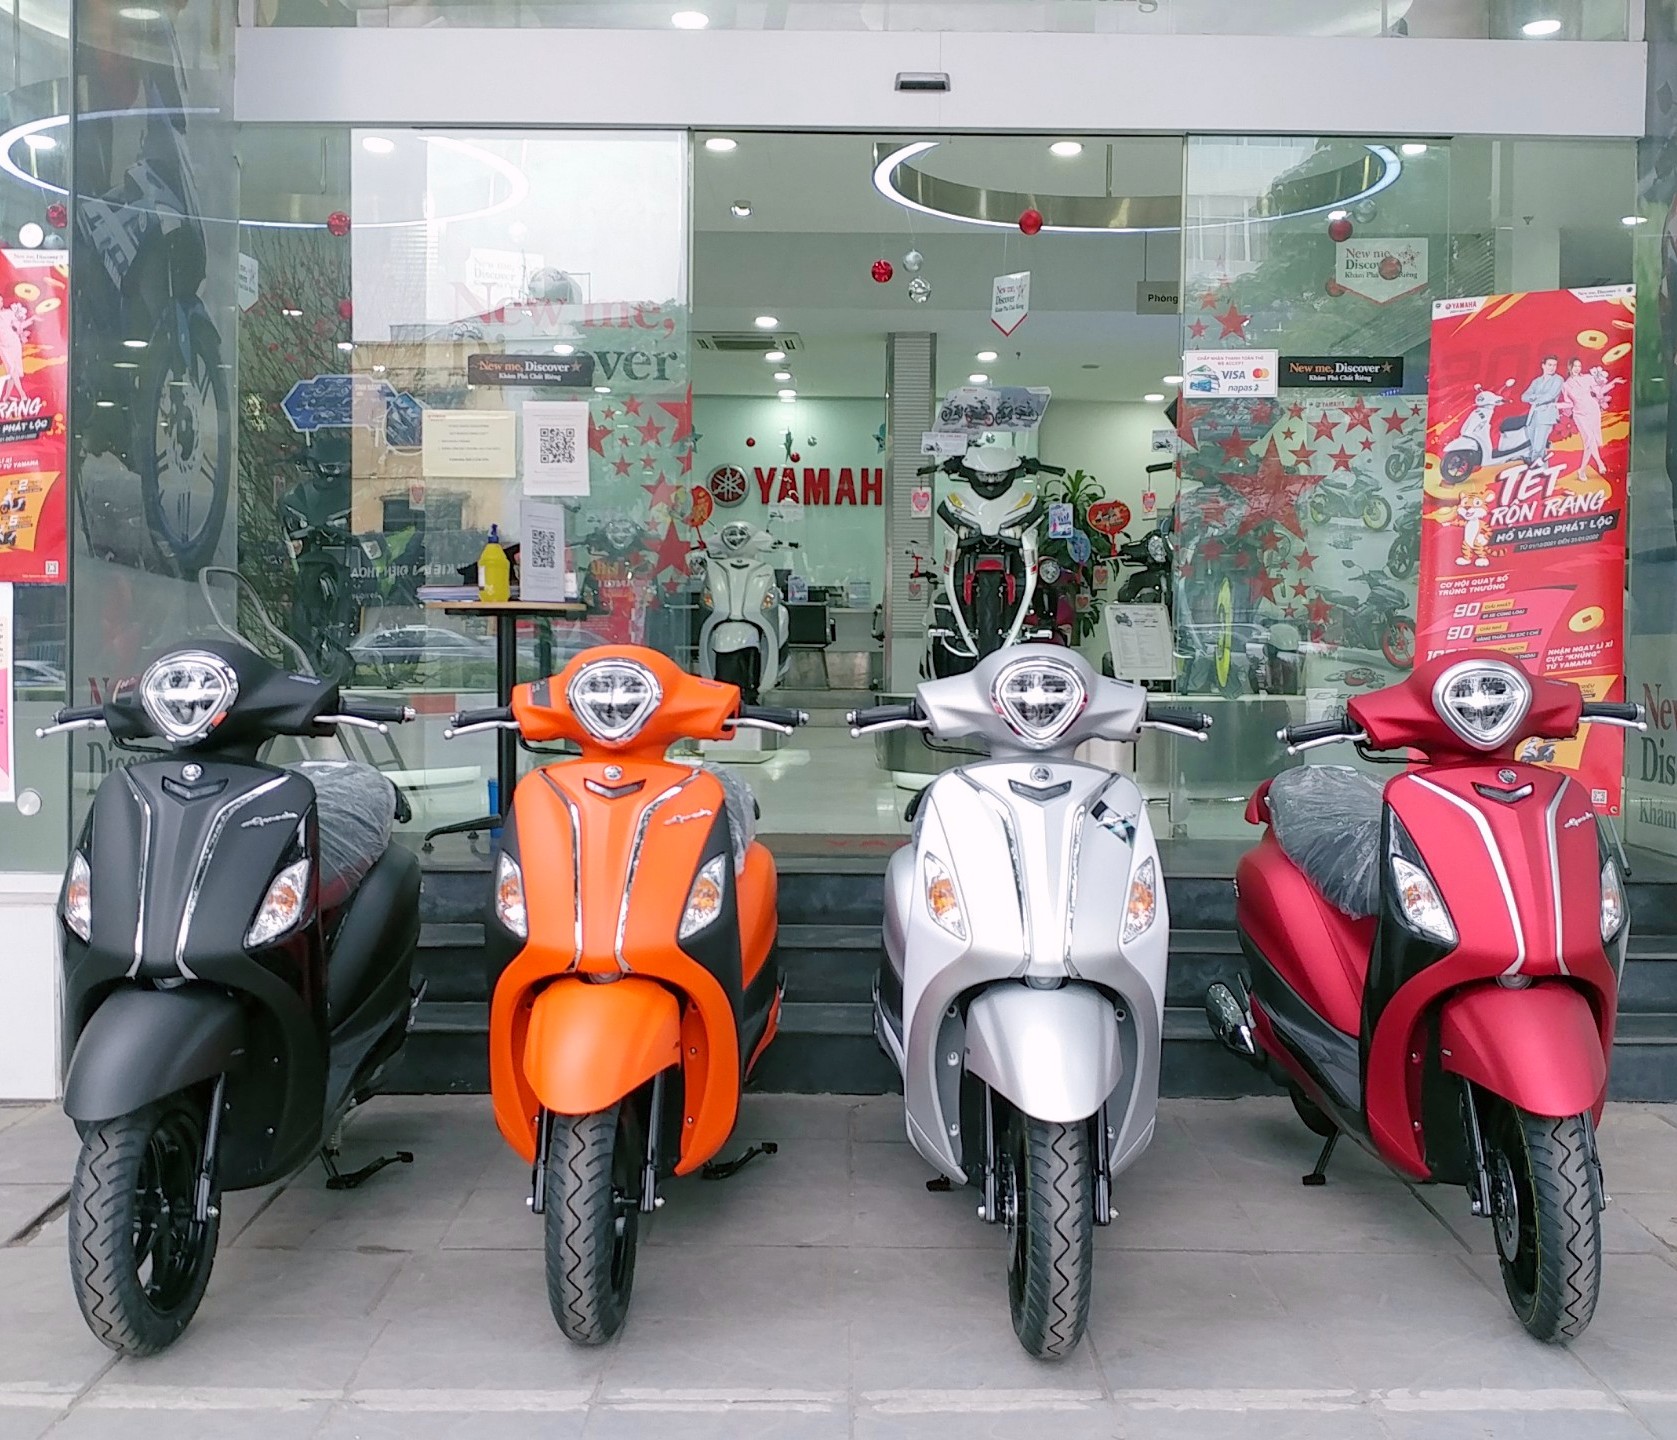 SÔI ĐỘNG CÙNG NGÀY HỘI YAMAHA MUSIC MOTOR  FASHION TẠI HÀ NỘI  Yamaha  Motor Việt Nam